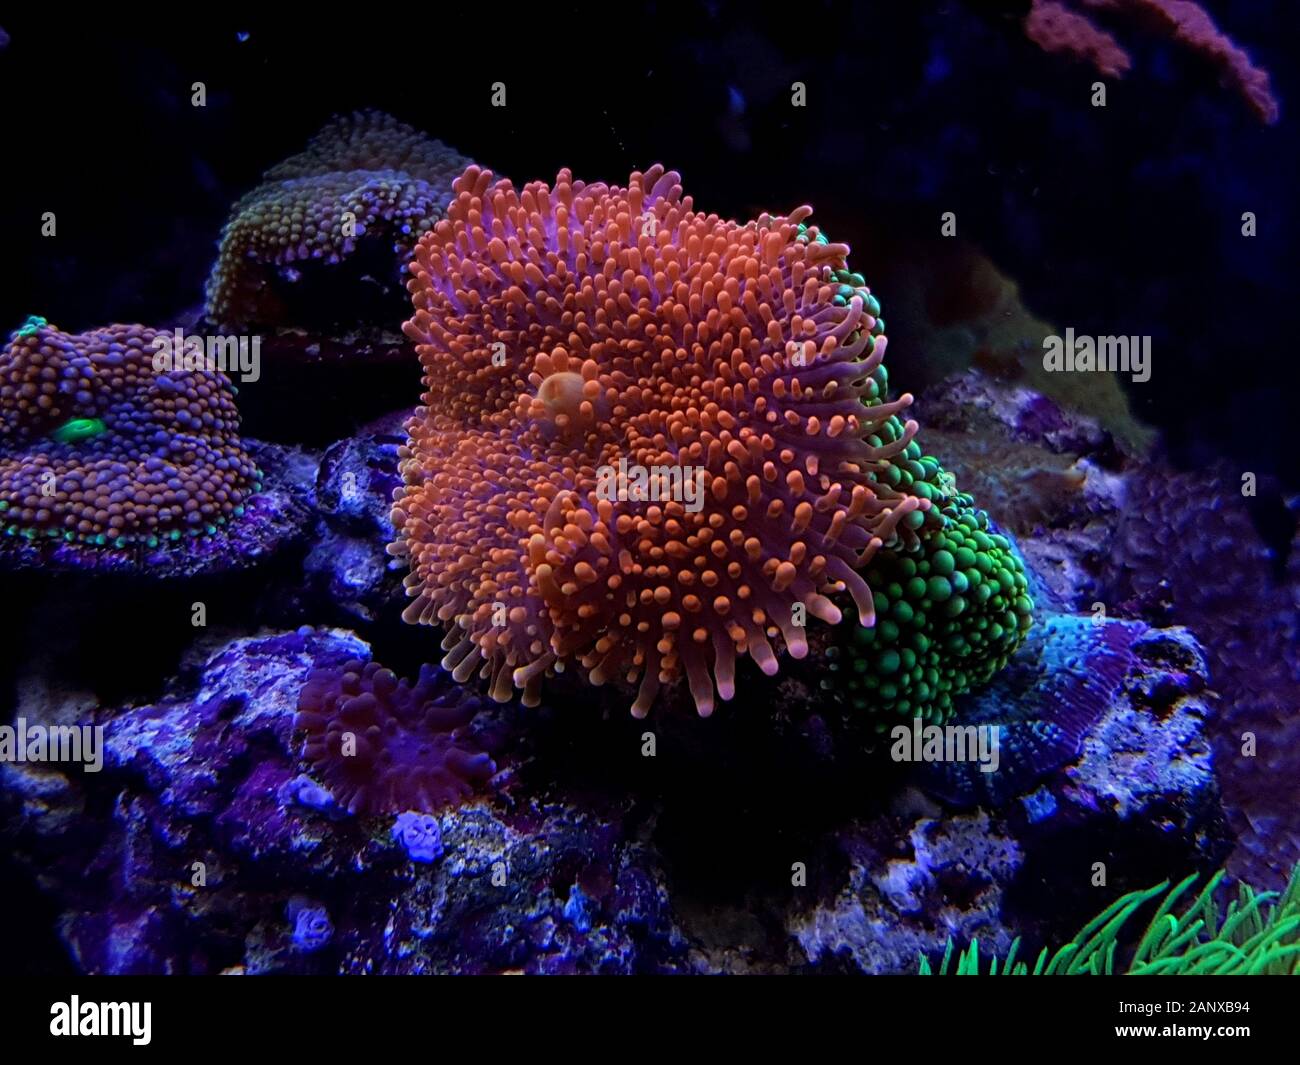 Ricordea Yuma ha isolato il corallo sulla spina frag Foto Stock